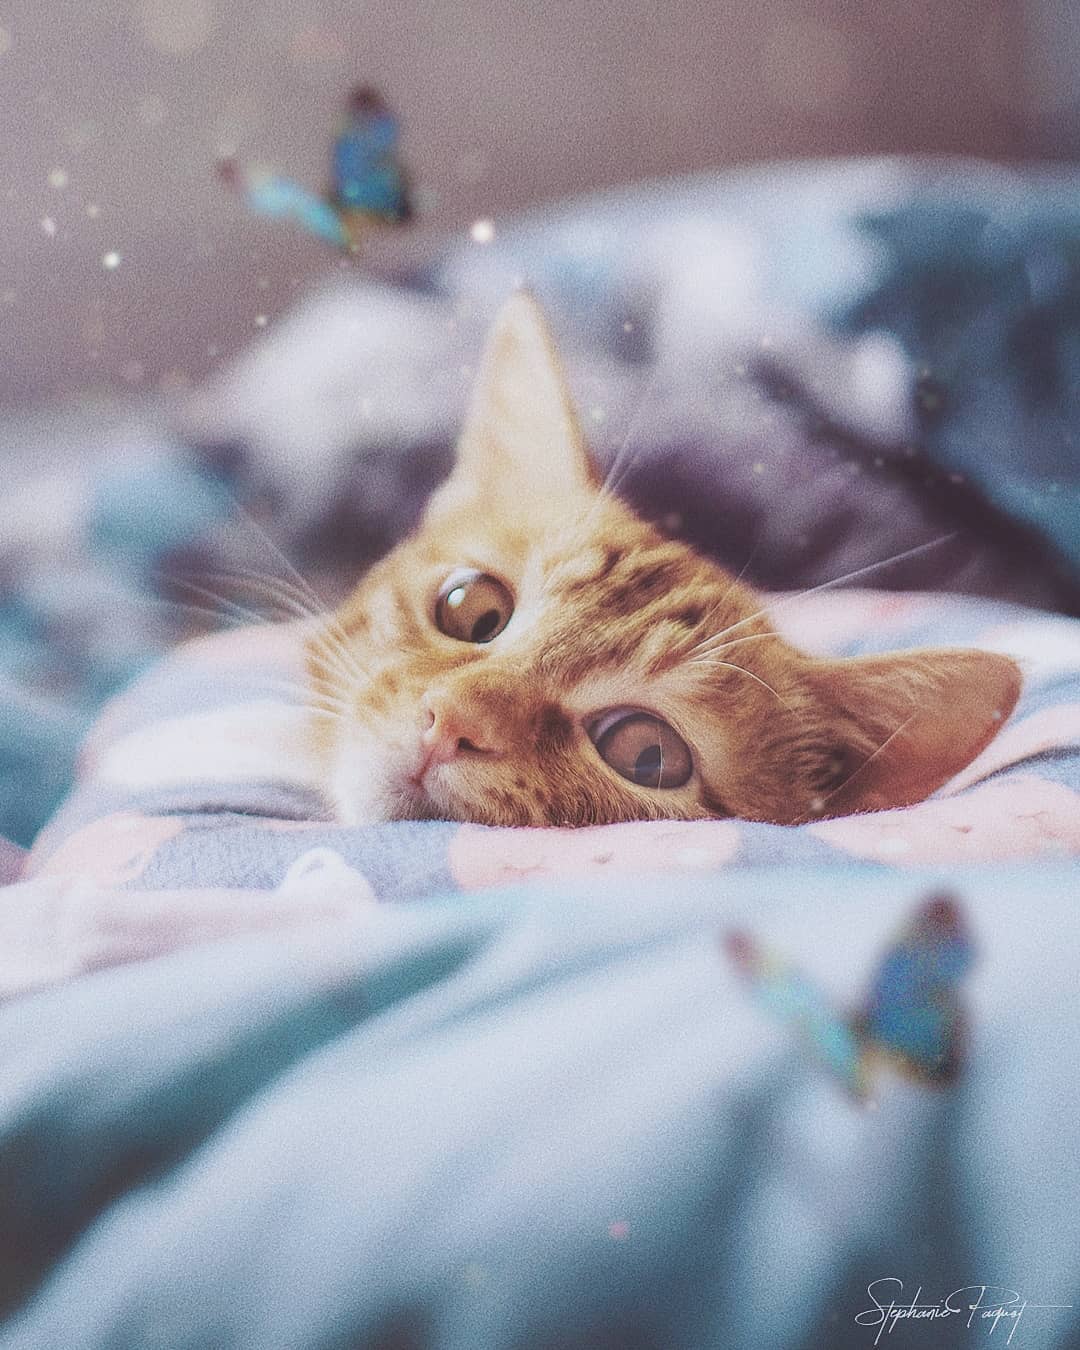 Фото Рыжий котенок в одеяле, by sphantasy_art